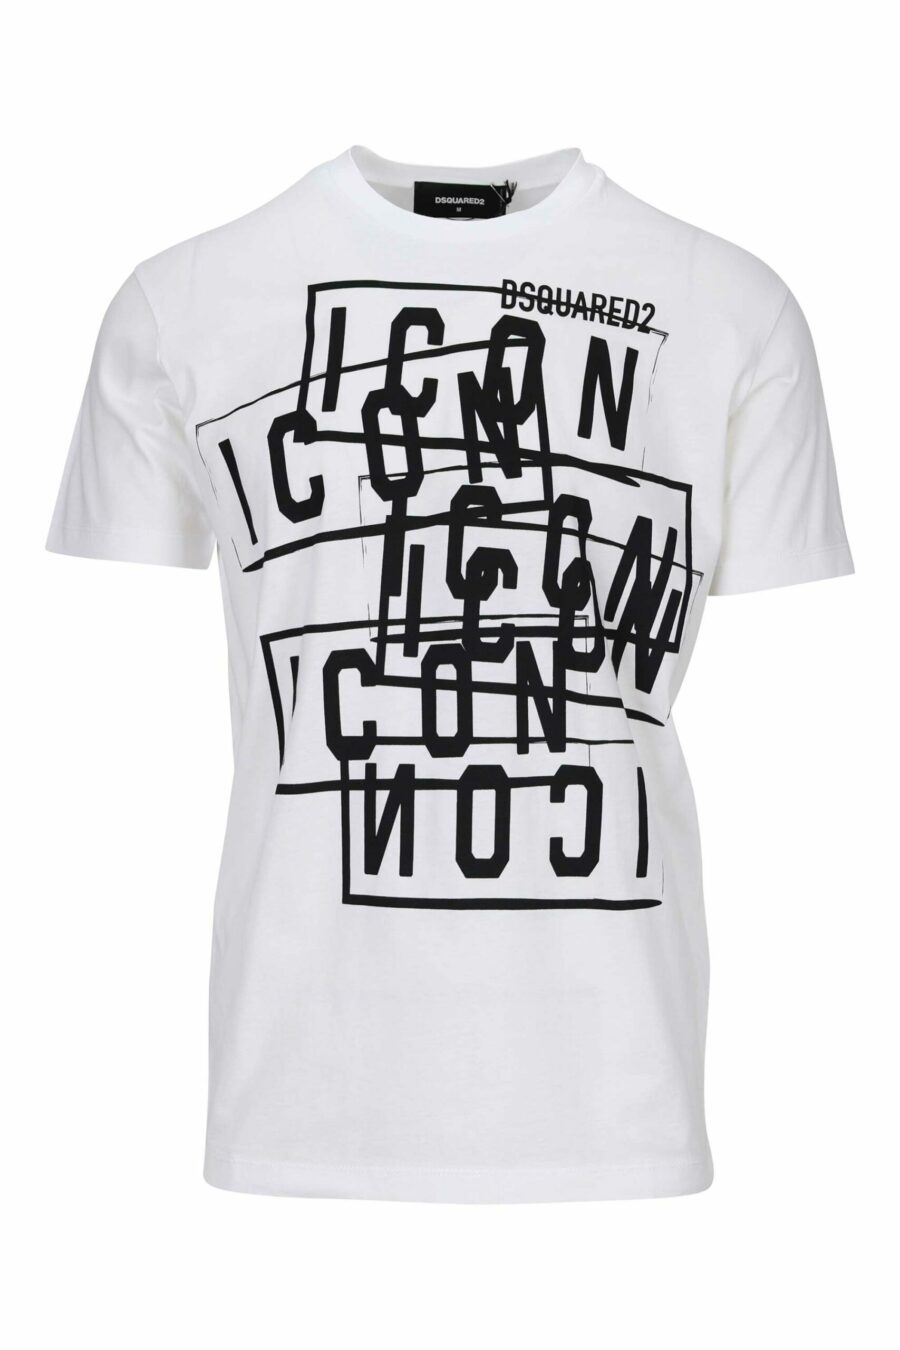 T-shirt branca com carimbos do logótipo "icon" - 8054148362676 à escala